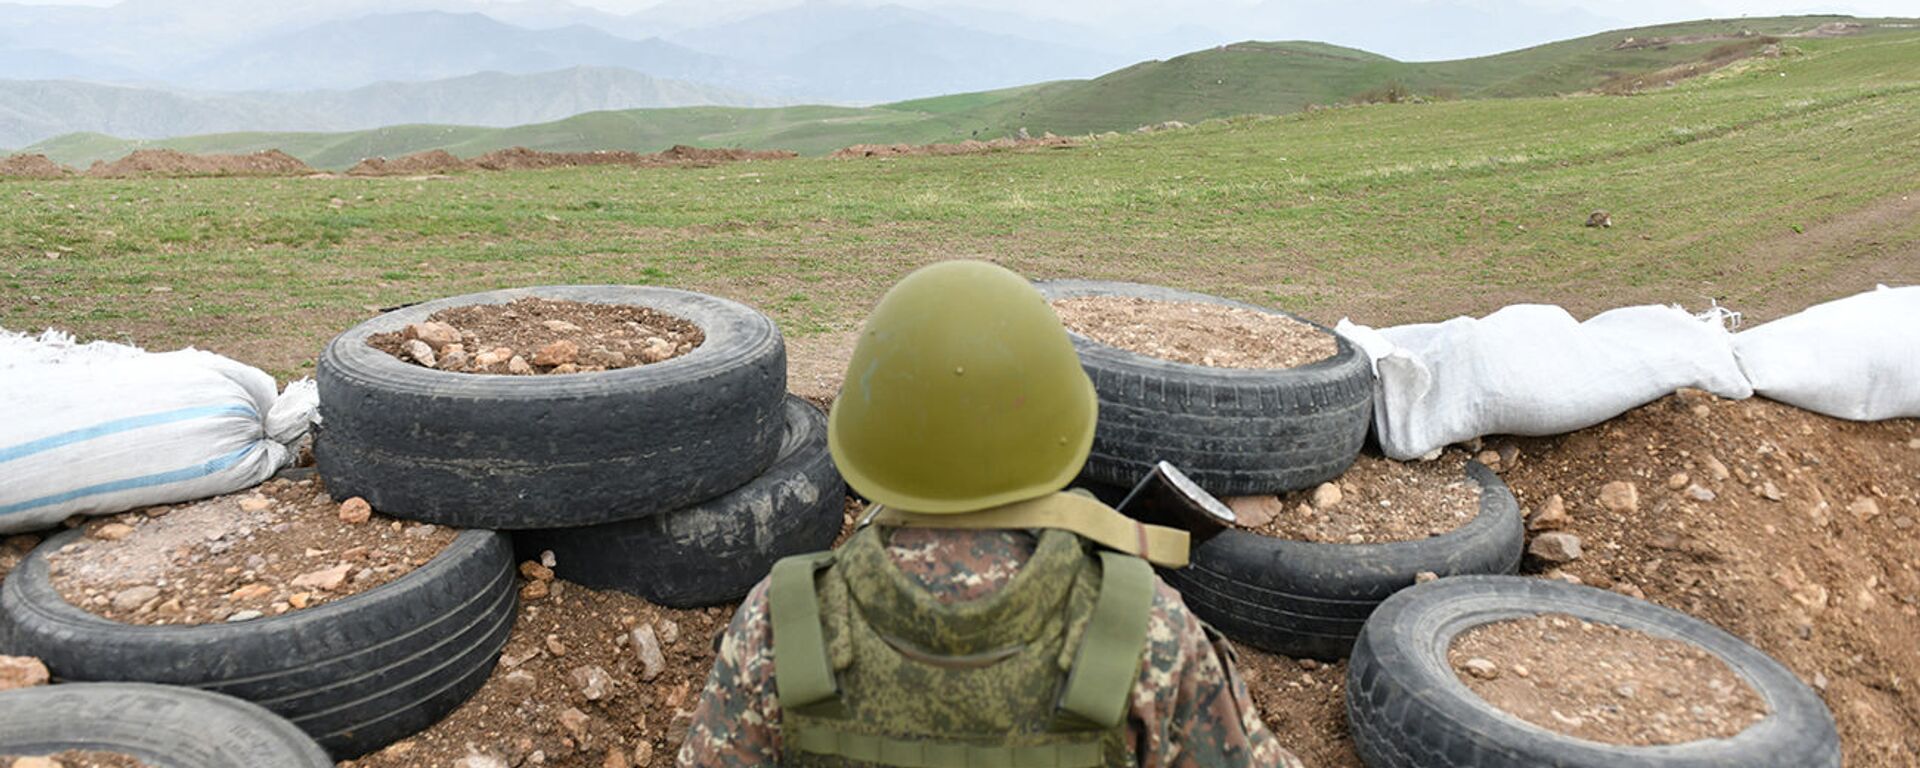 Армянский военнослужащий на армяно-азербайджанской границе - Sputnik Армения, 1920, 08.06.2021